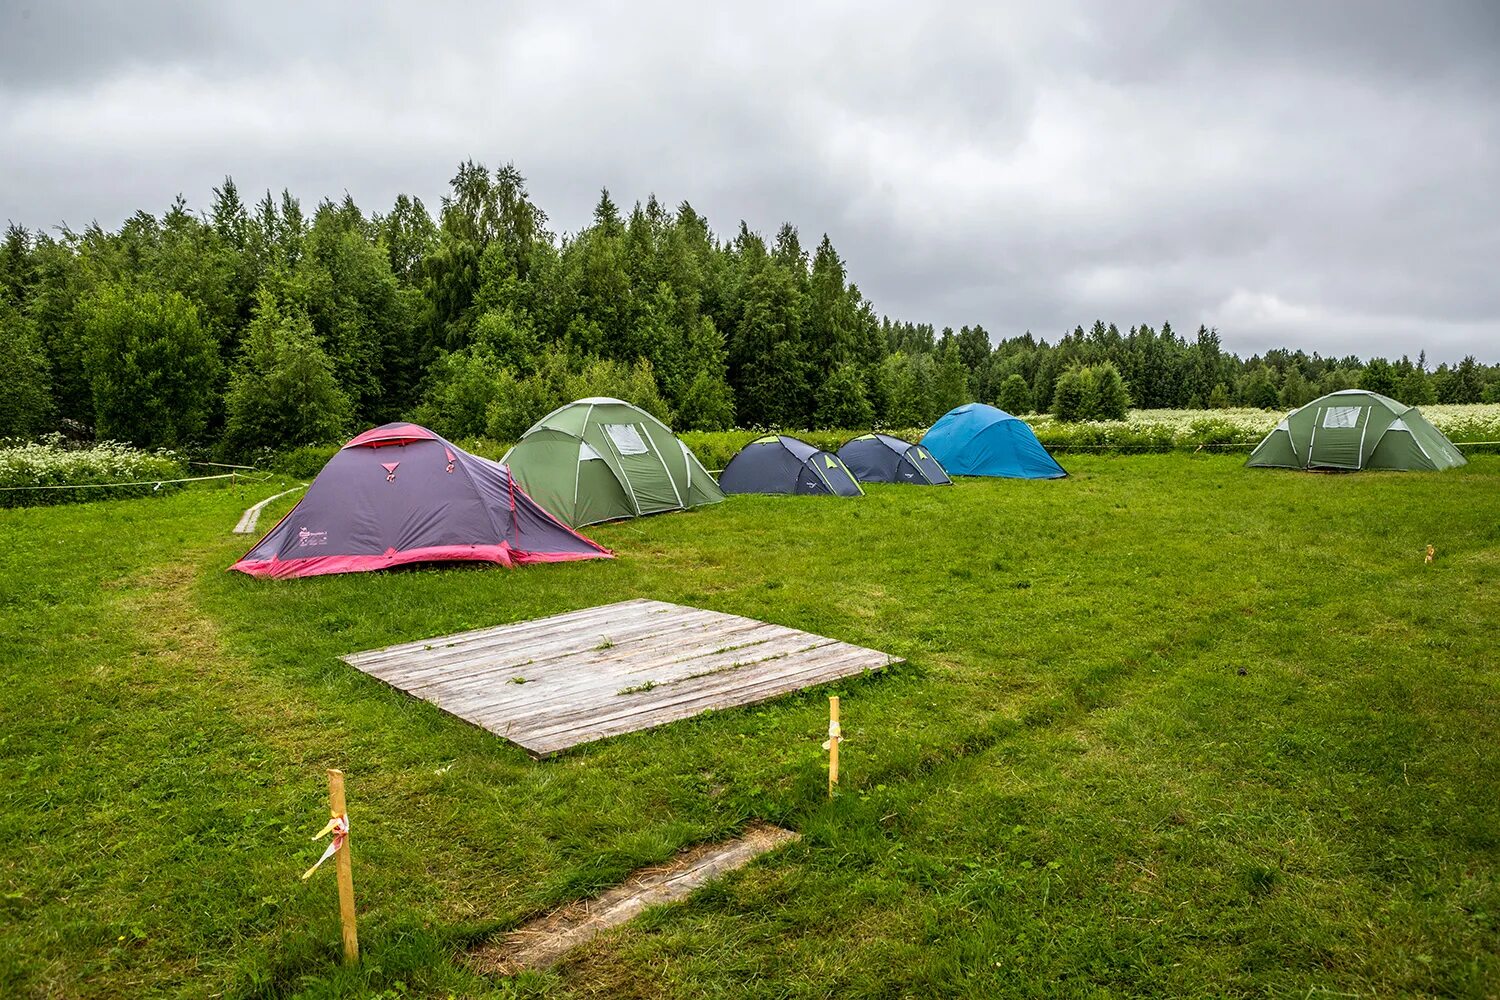 Включи camping. Белкино палаточный лагерь. Палаточный лагерь имени Олега Кошевого. Палаточный лагерь Камлак. Вятские Поляны палаточный лагерь.